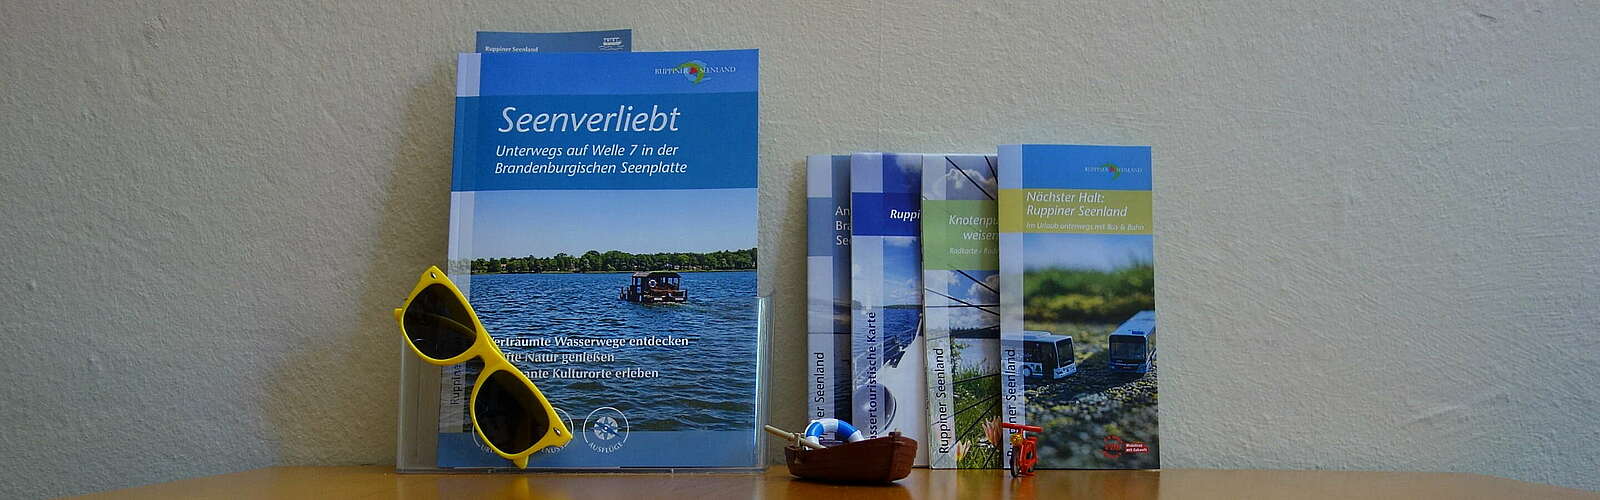 Reisemagazin und Broschüren,
        
    

        Foto: Tourismusverband Ruppiner Seenland e.V./Andrea Krumnow